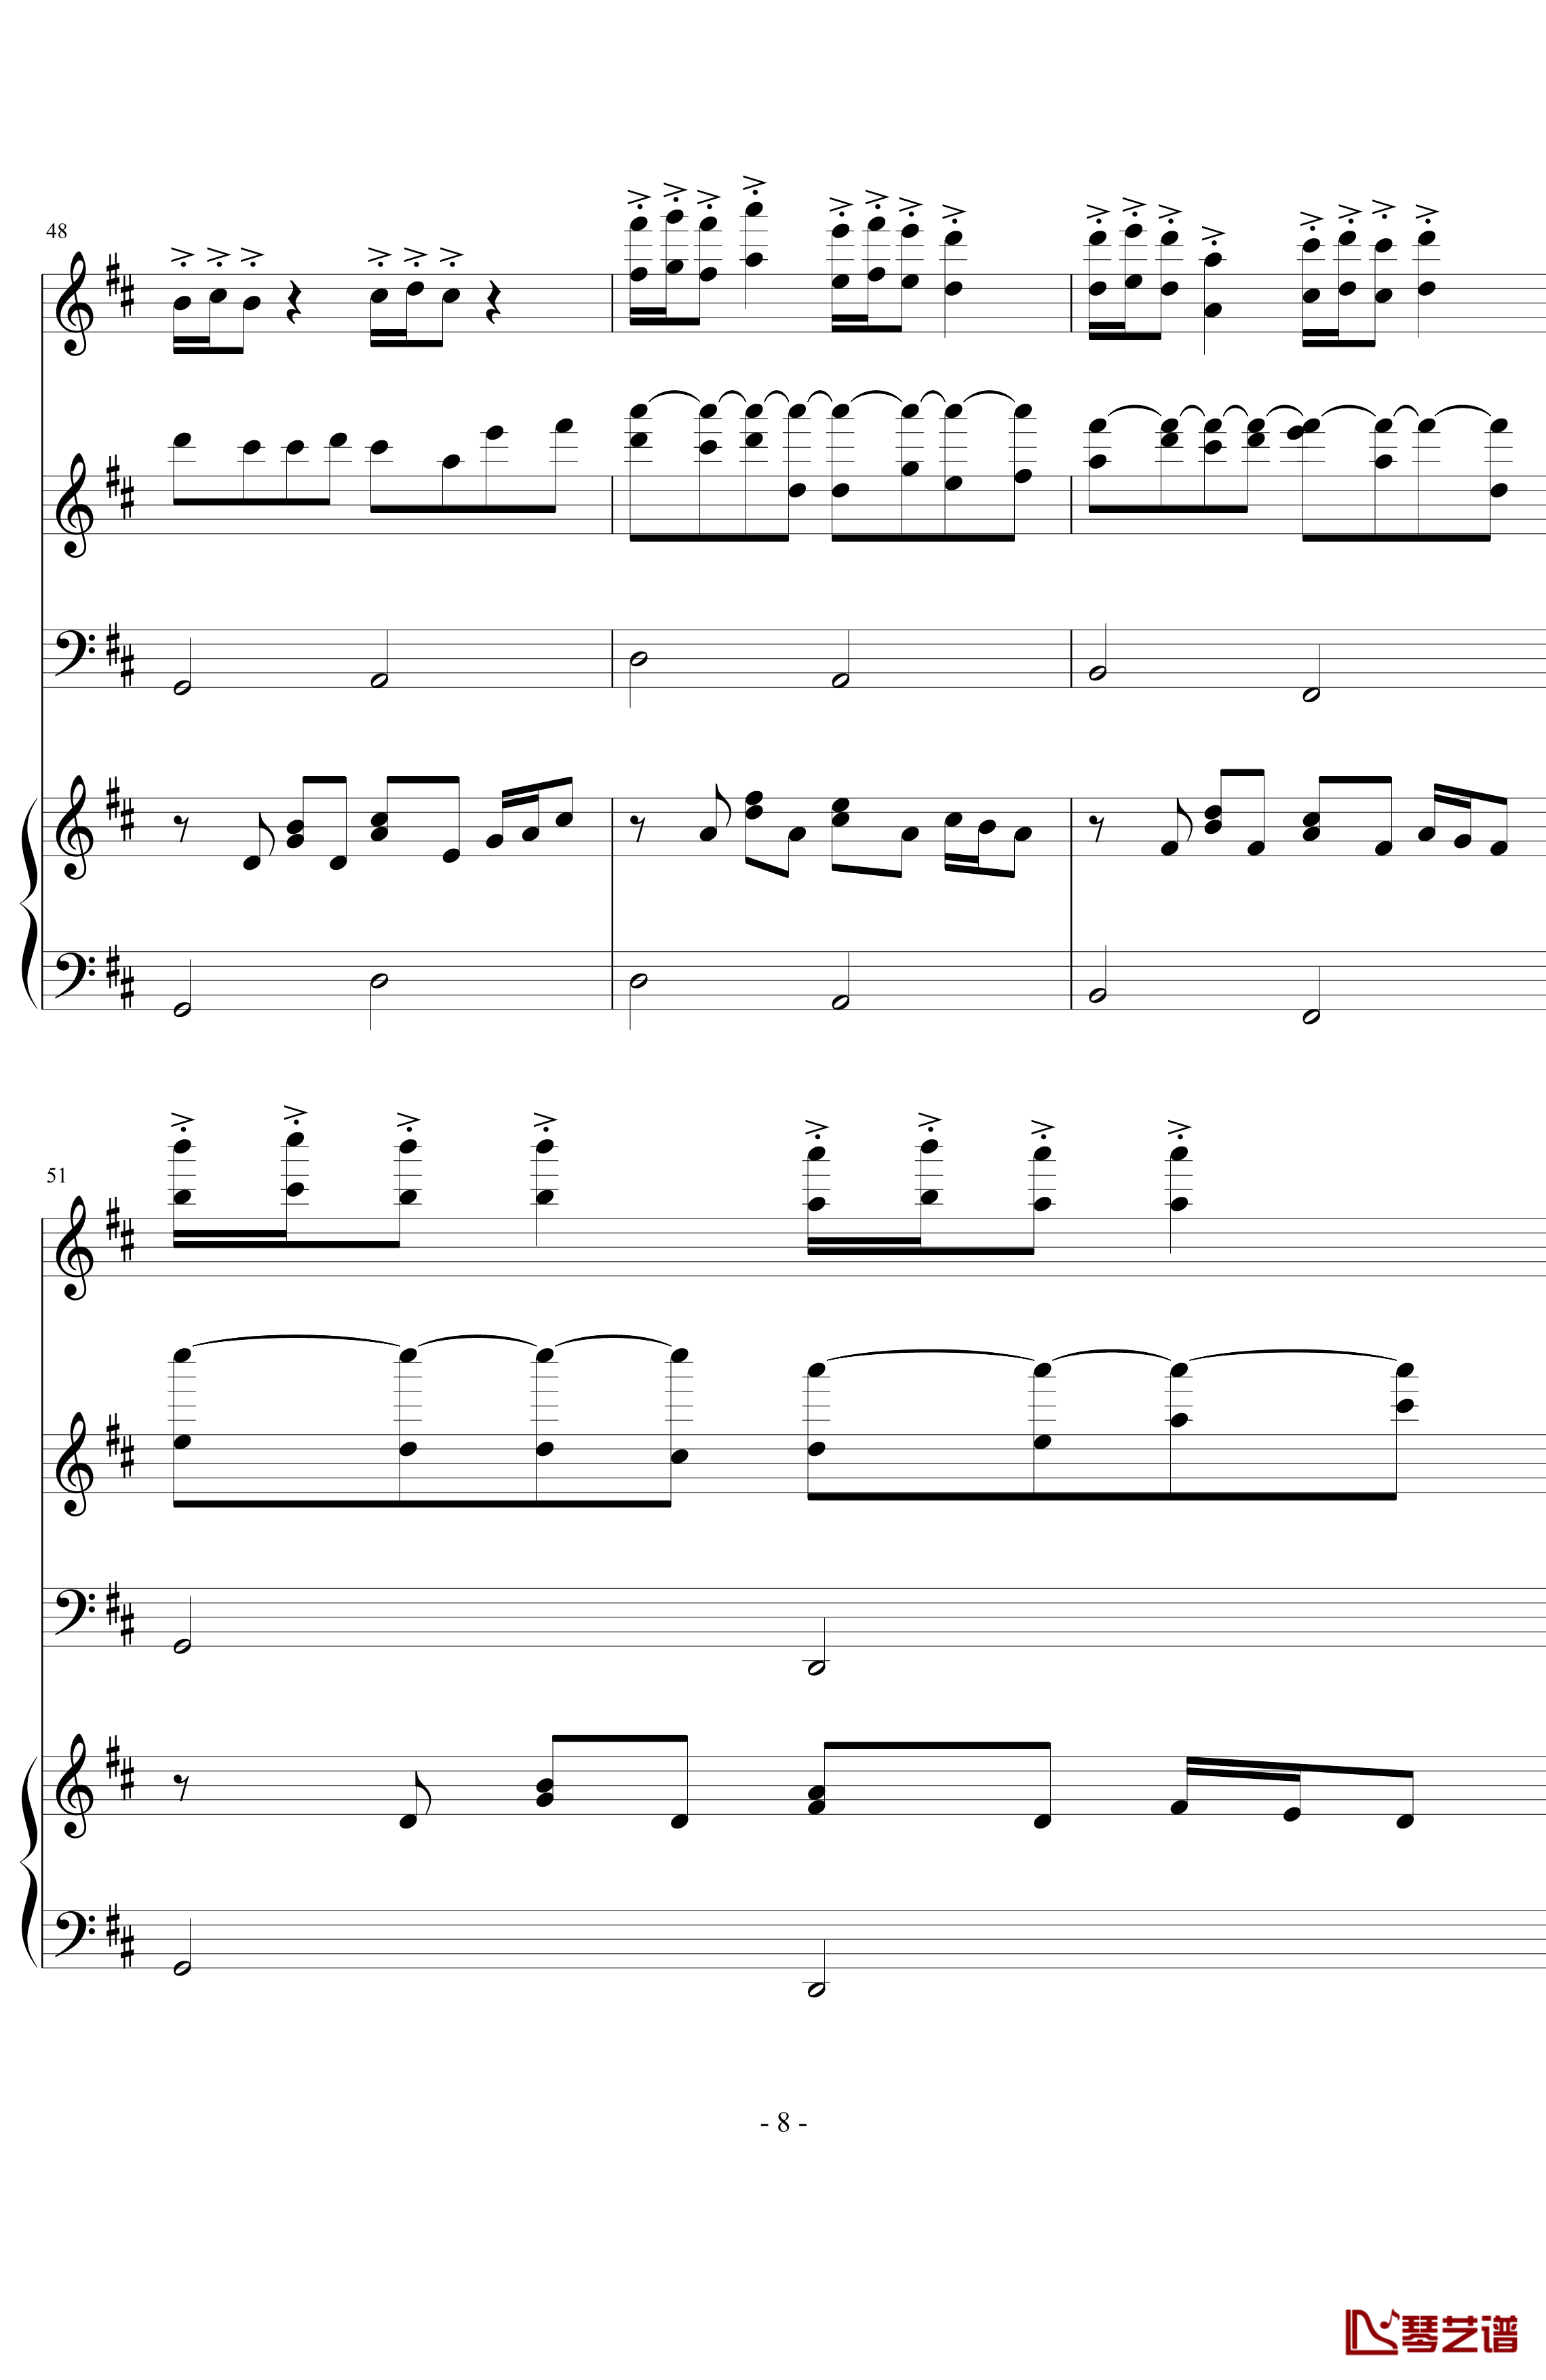 卡农森林版钢琴谱-帕赫贝尔-Pachelbel8